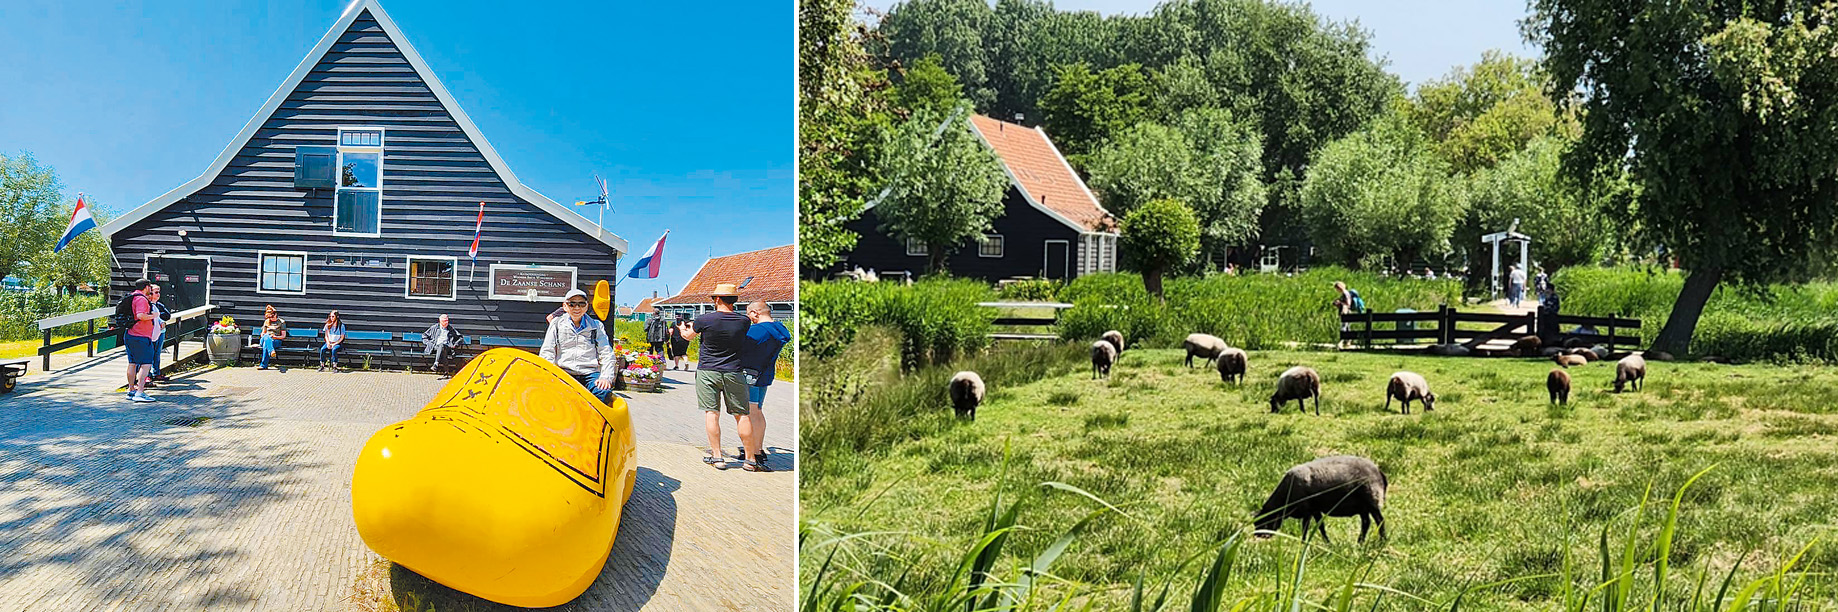 左圖：小屋前的巨型荷蘭木鞋。右圖：群羊在青草地上。（作者攝影）